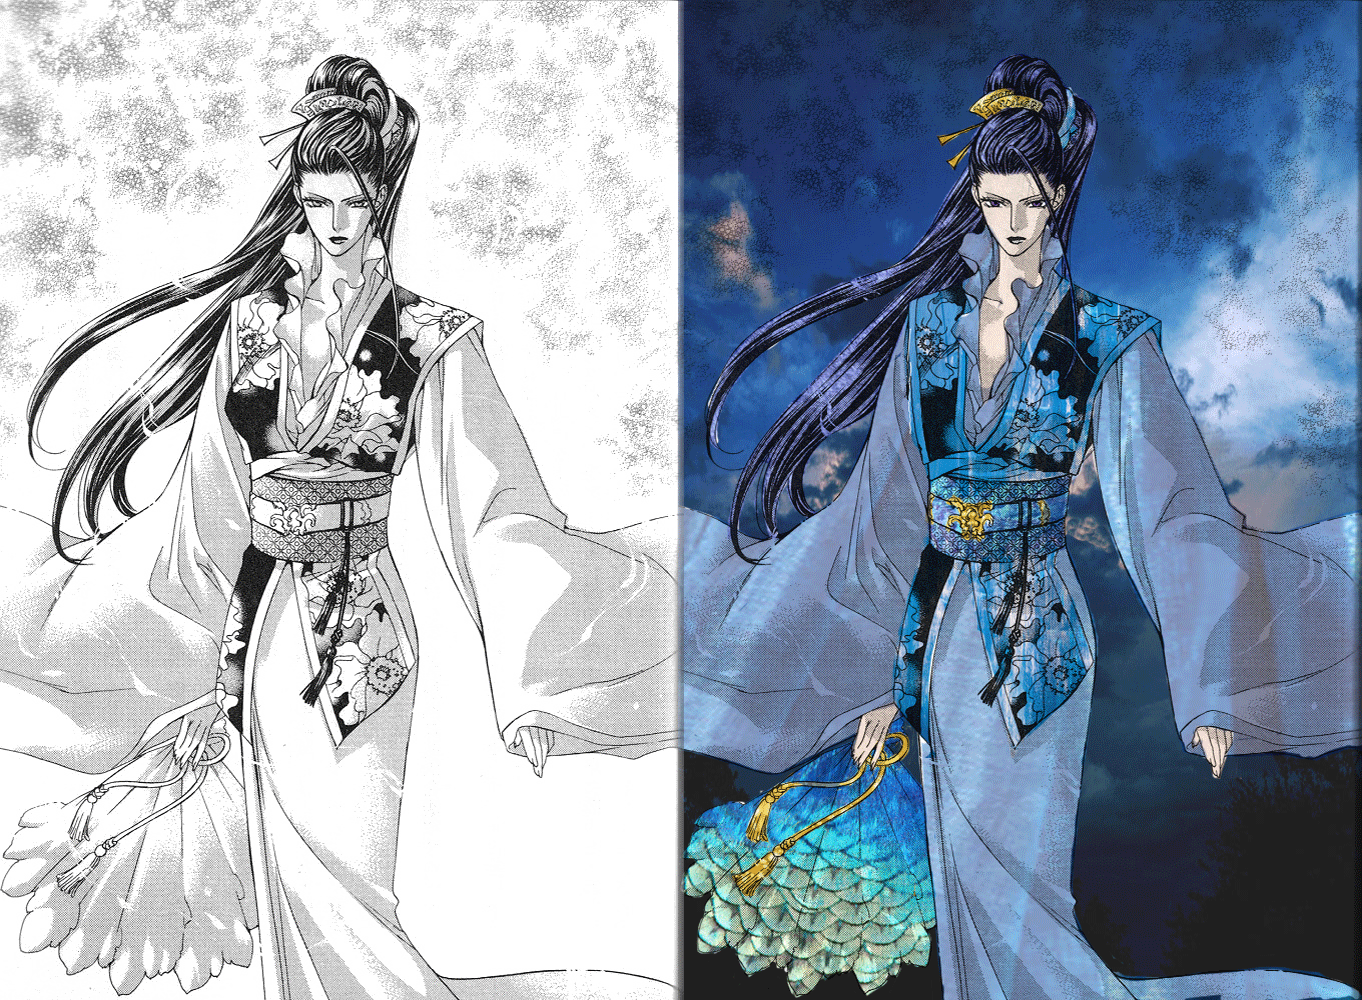 Coloration einer Novelillustration von Ayano Yamane zu "Yuragu Sekai no Chouritsushi", leichte Änderung des Characters von Frau zu Mann